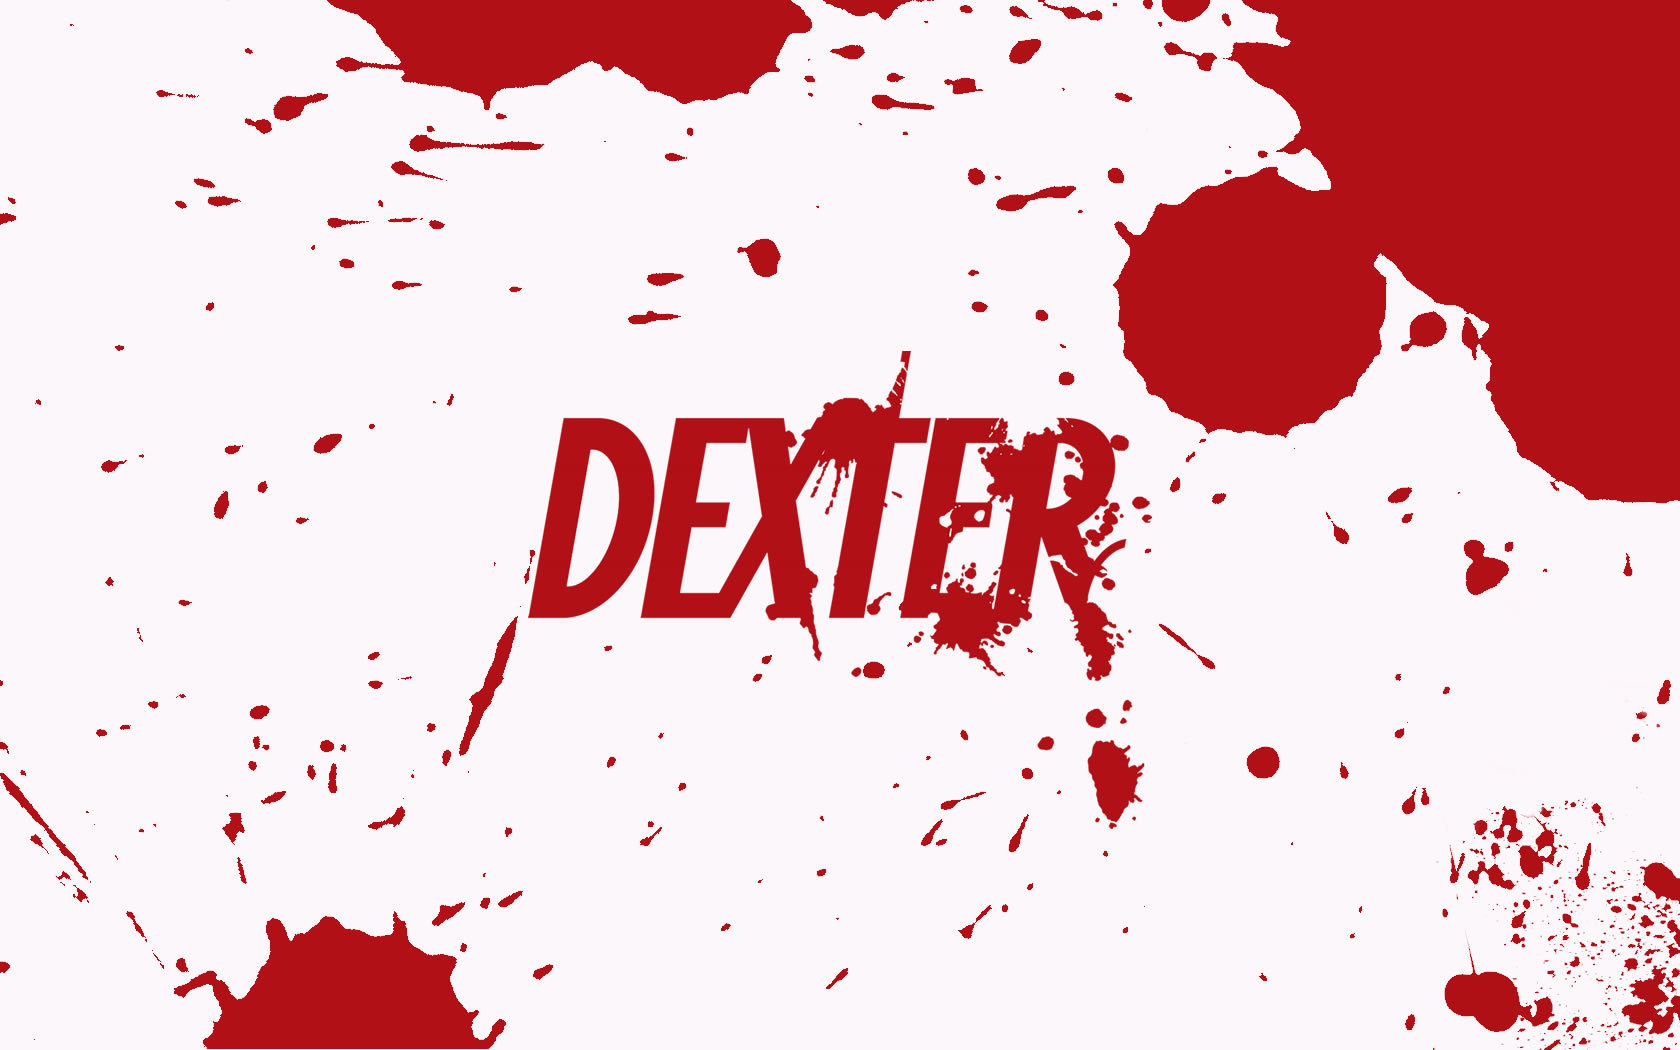 1080p Dexter Hd Images